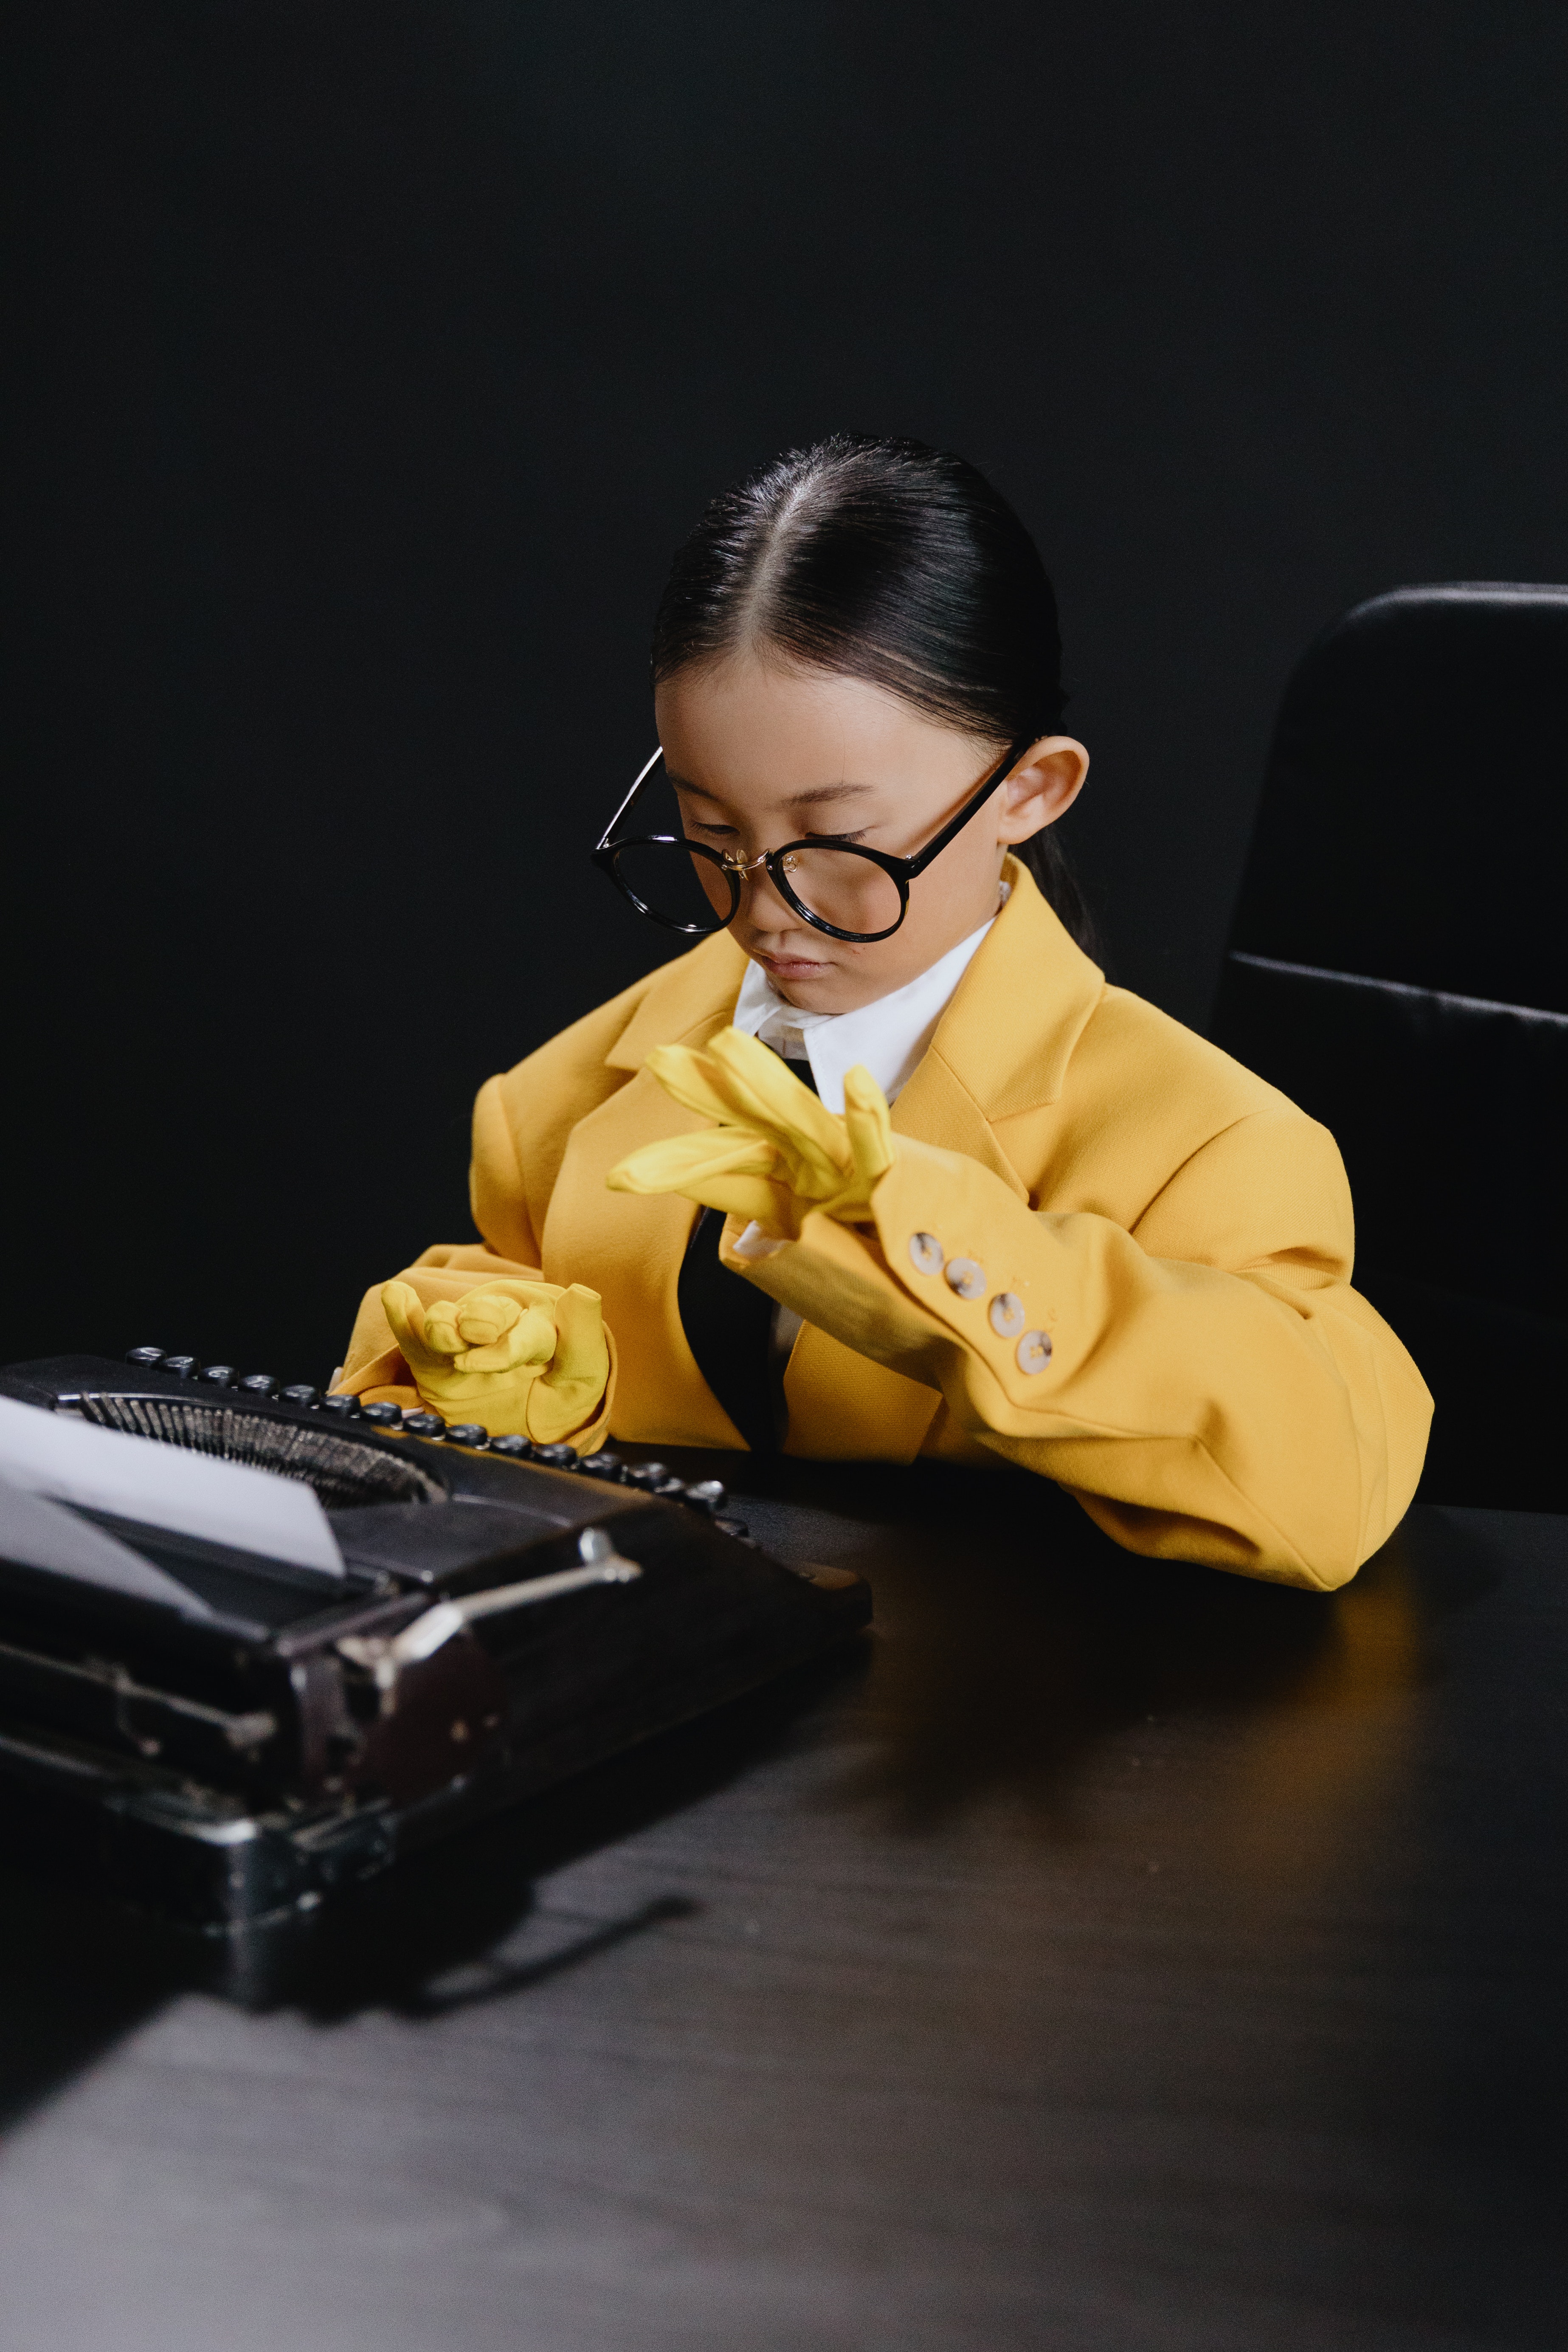 Una niña vestida de amarillo escribiendo en una máquina de escribir antigua